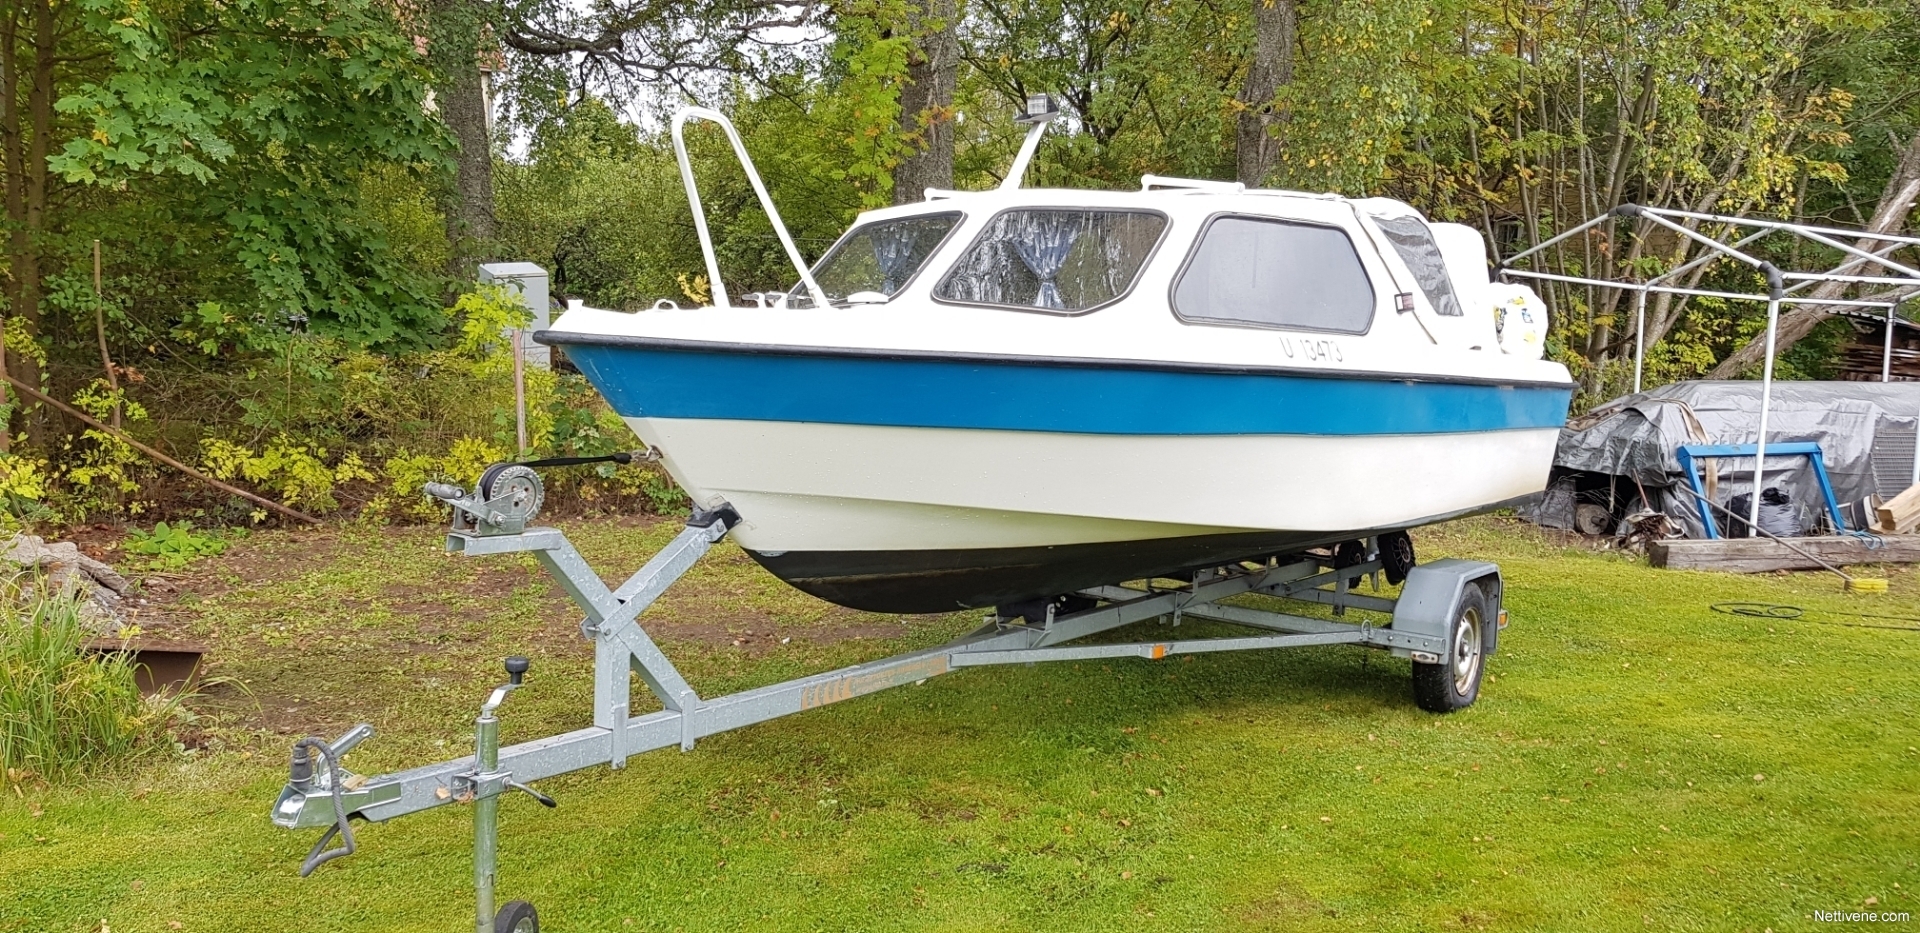 Nyt myynnissä Yamarin 540 HT motor boat 540 HT - Hanko, Uusimaa. 